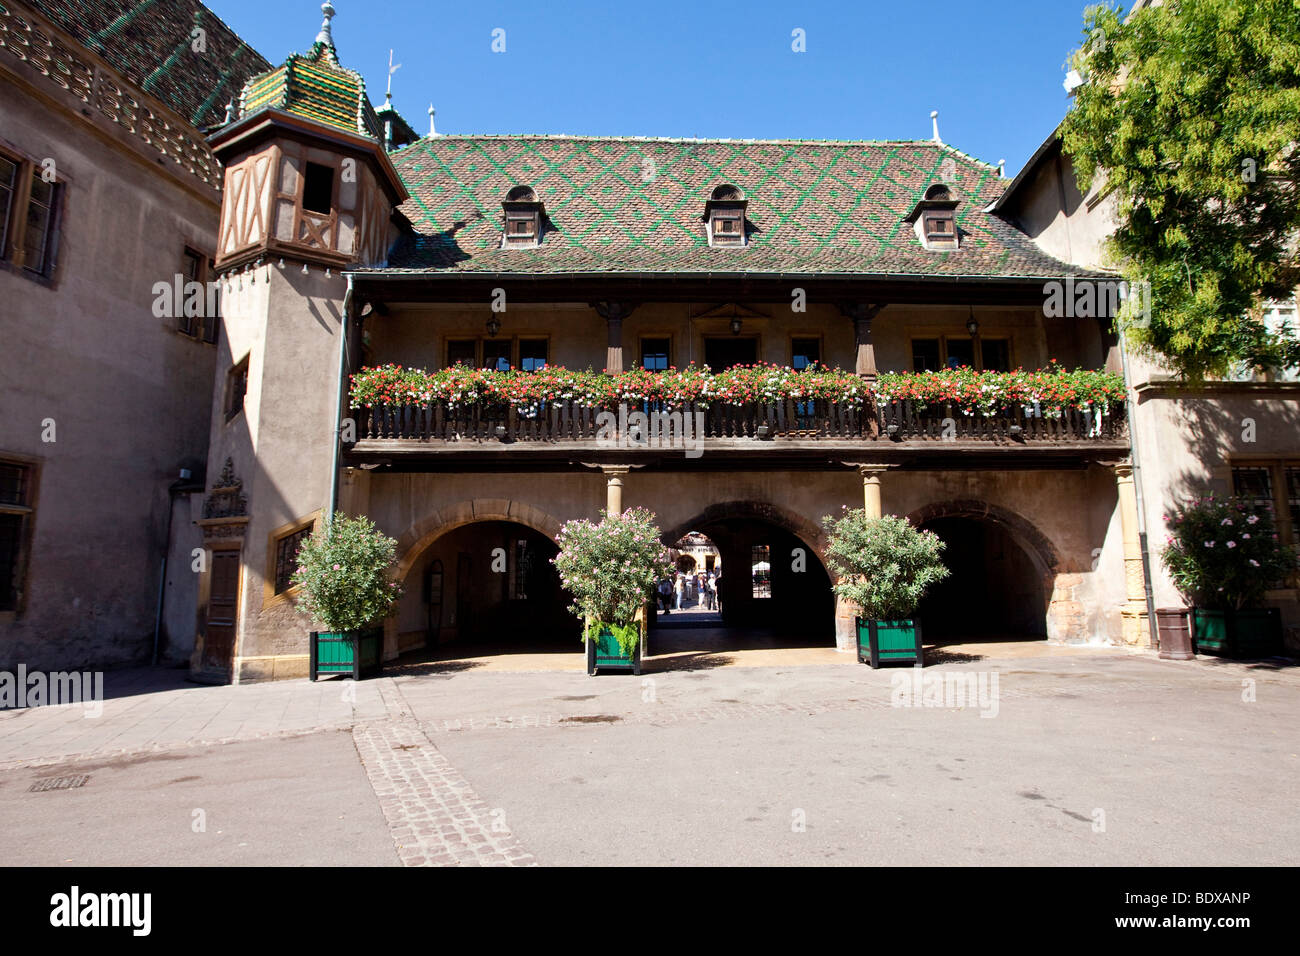 Place de l'Ancienne Douane, historic town centre of Colmar, Alsace, France, Europe Stock Photo